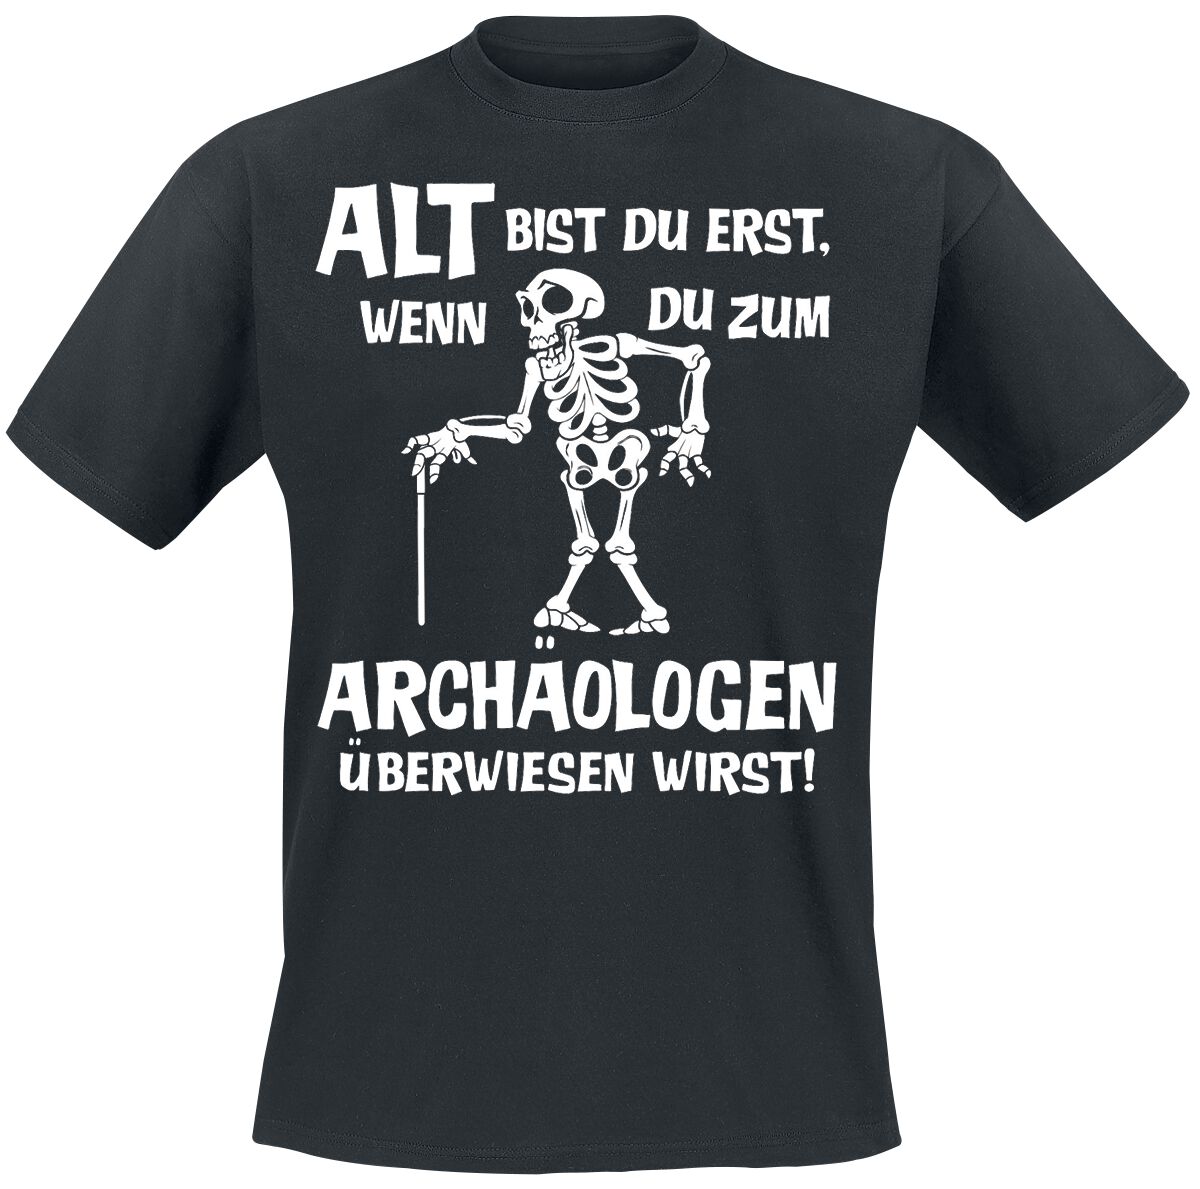 Sprüche T-Shirt - Alt bist du erst, wenn du zum Archäologen überwiesen wirst! - M bis 4XL - für Männer - Größe 3XL - schwarz